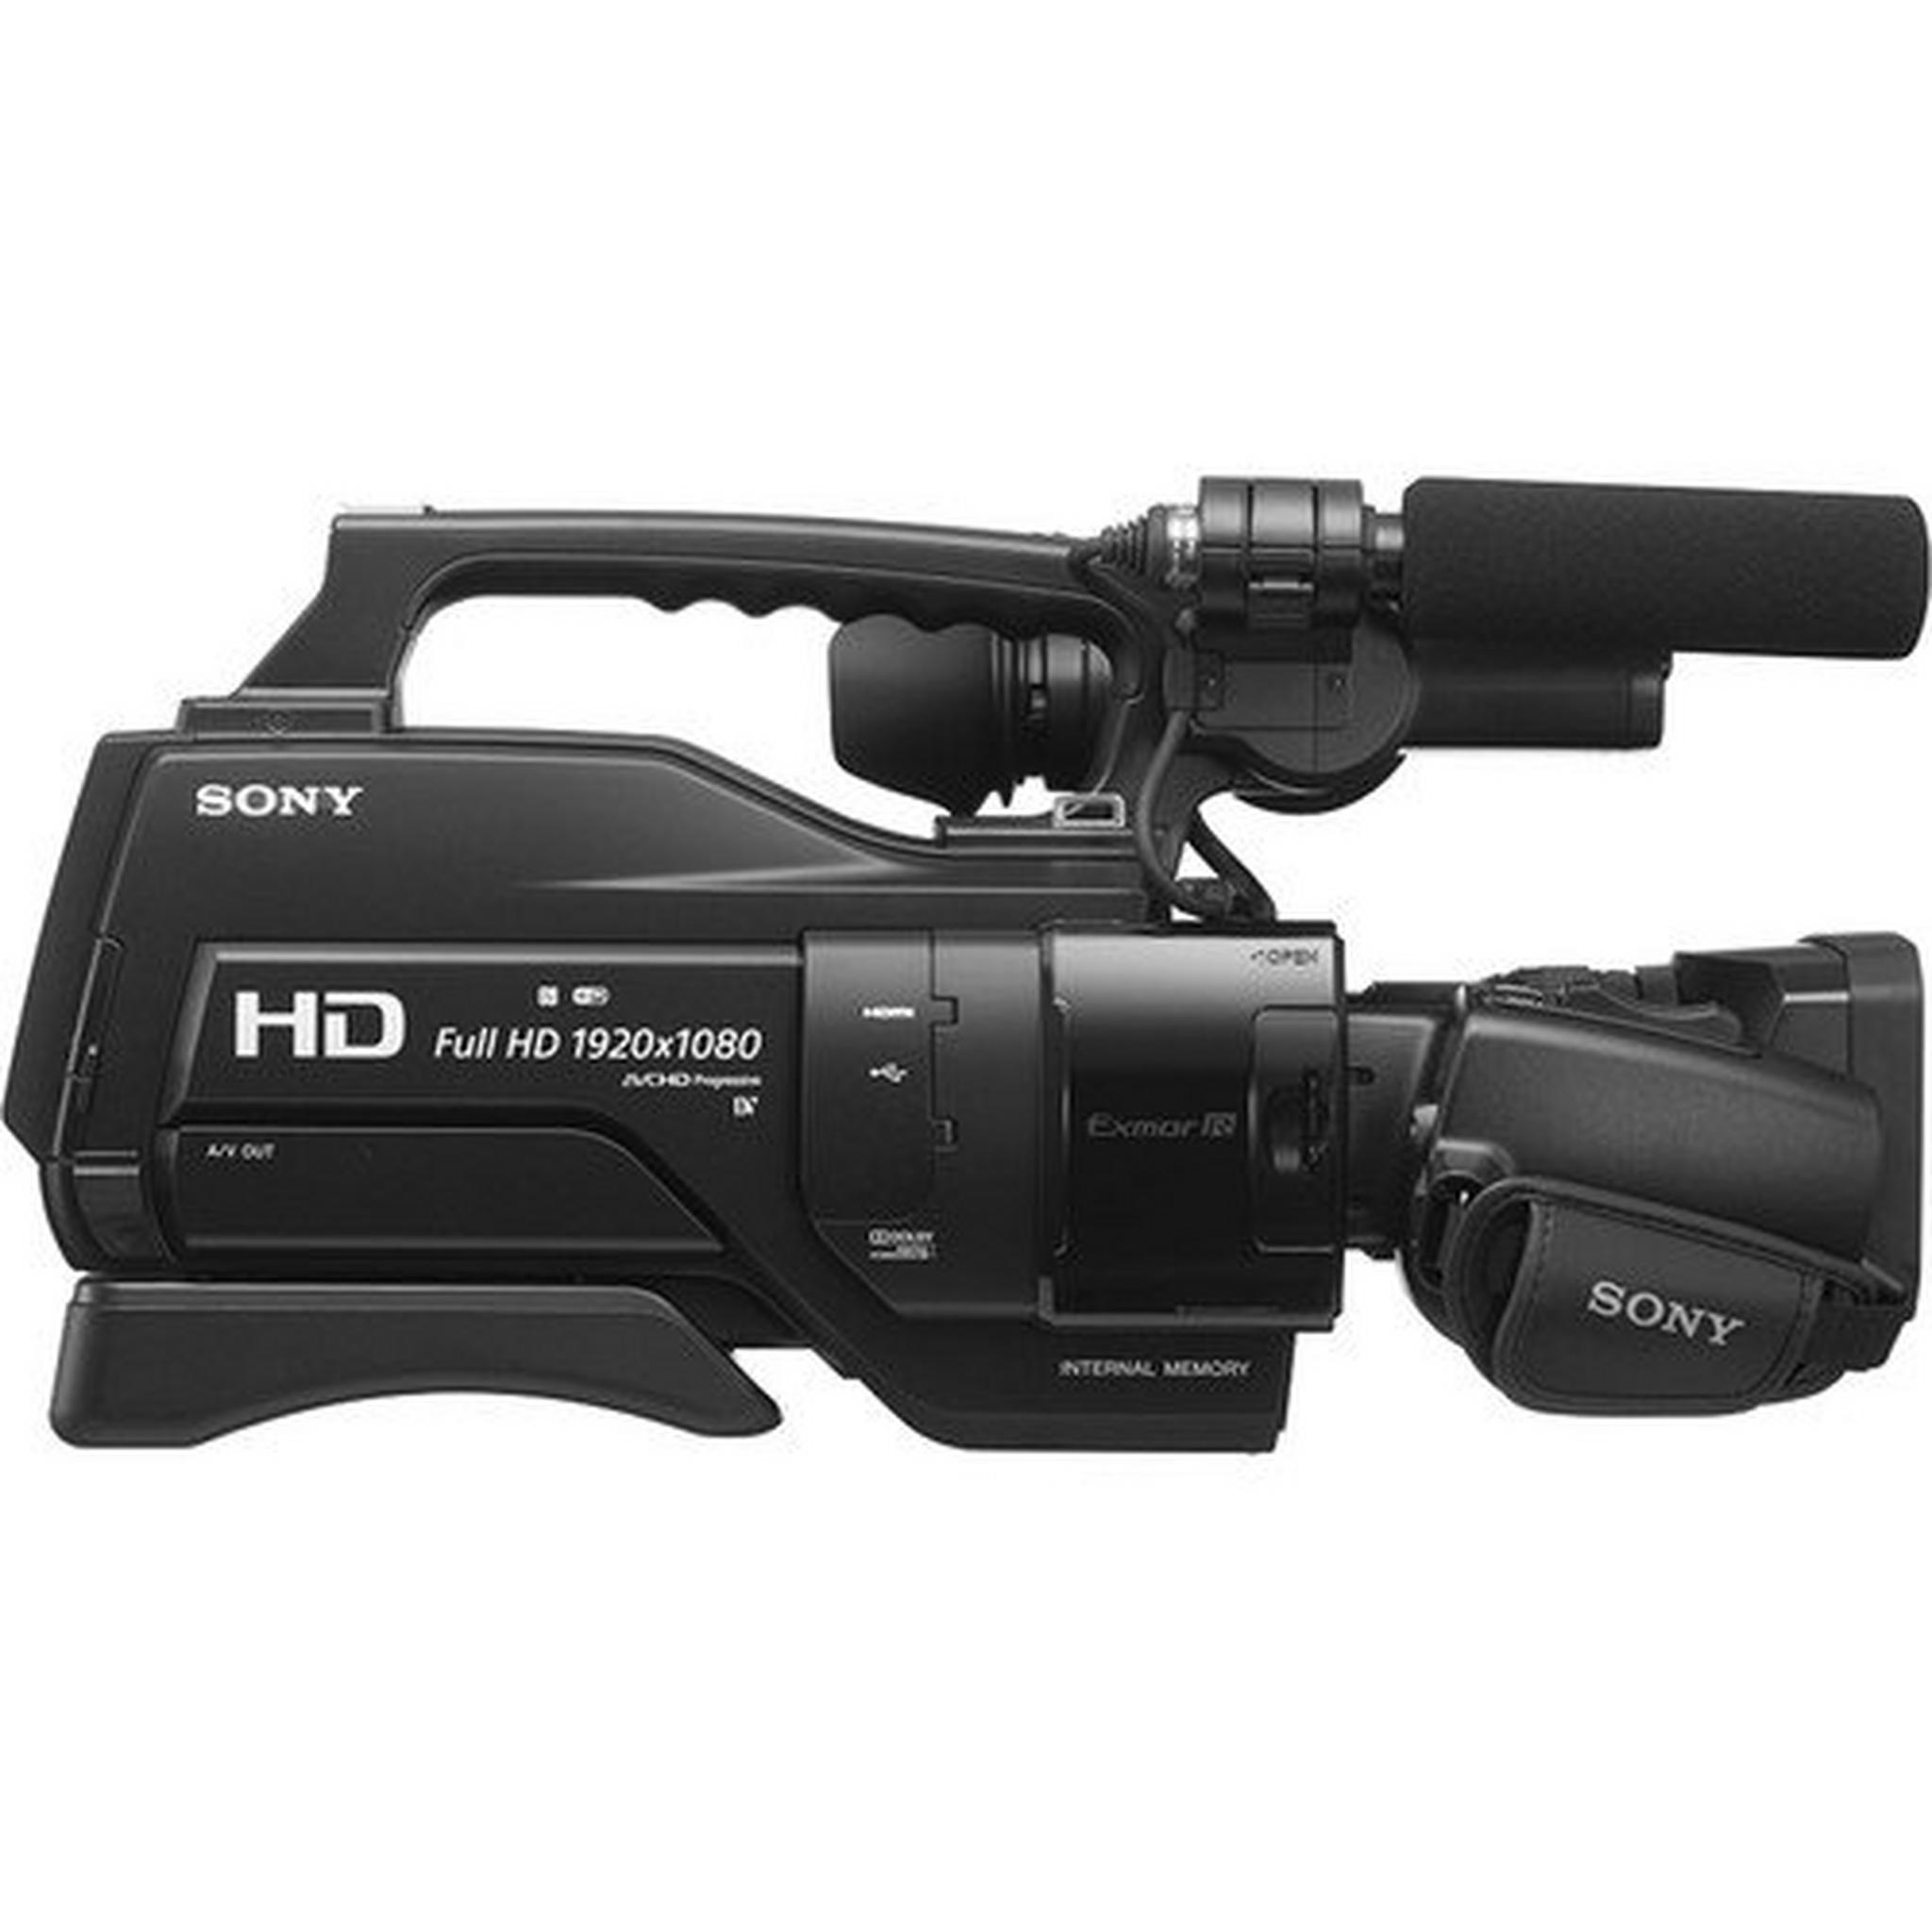 كاميرا الفيديو المحمولة على الكتف من سوني - HXR-MC2500E